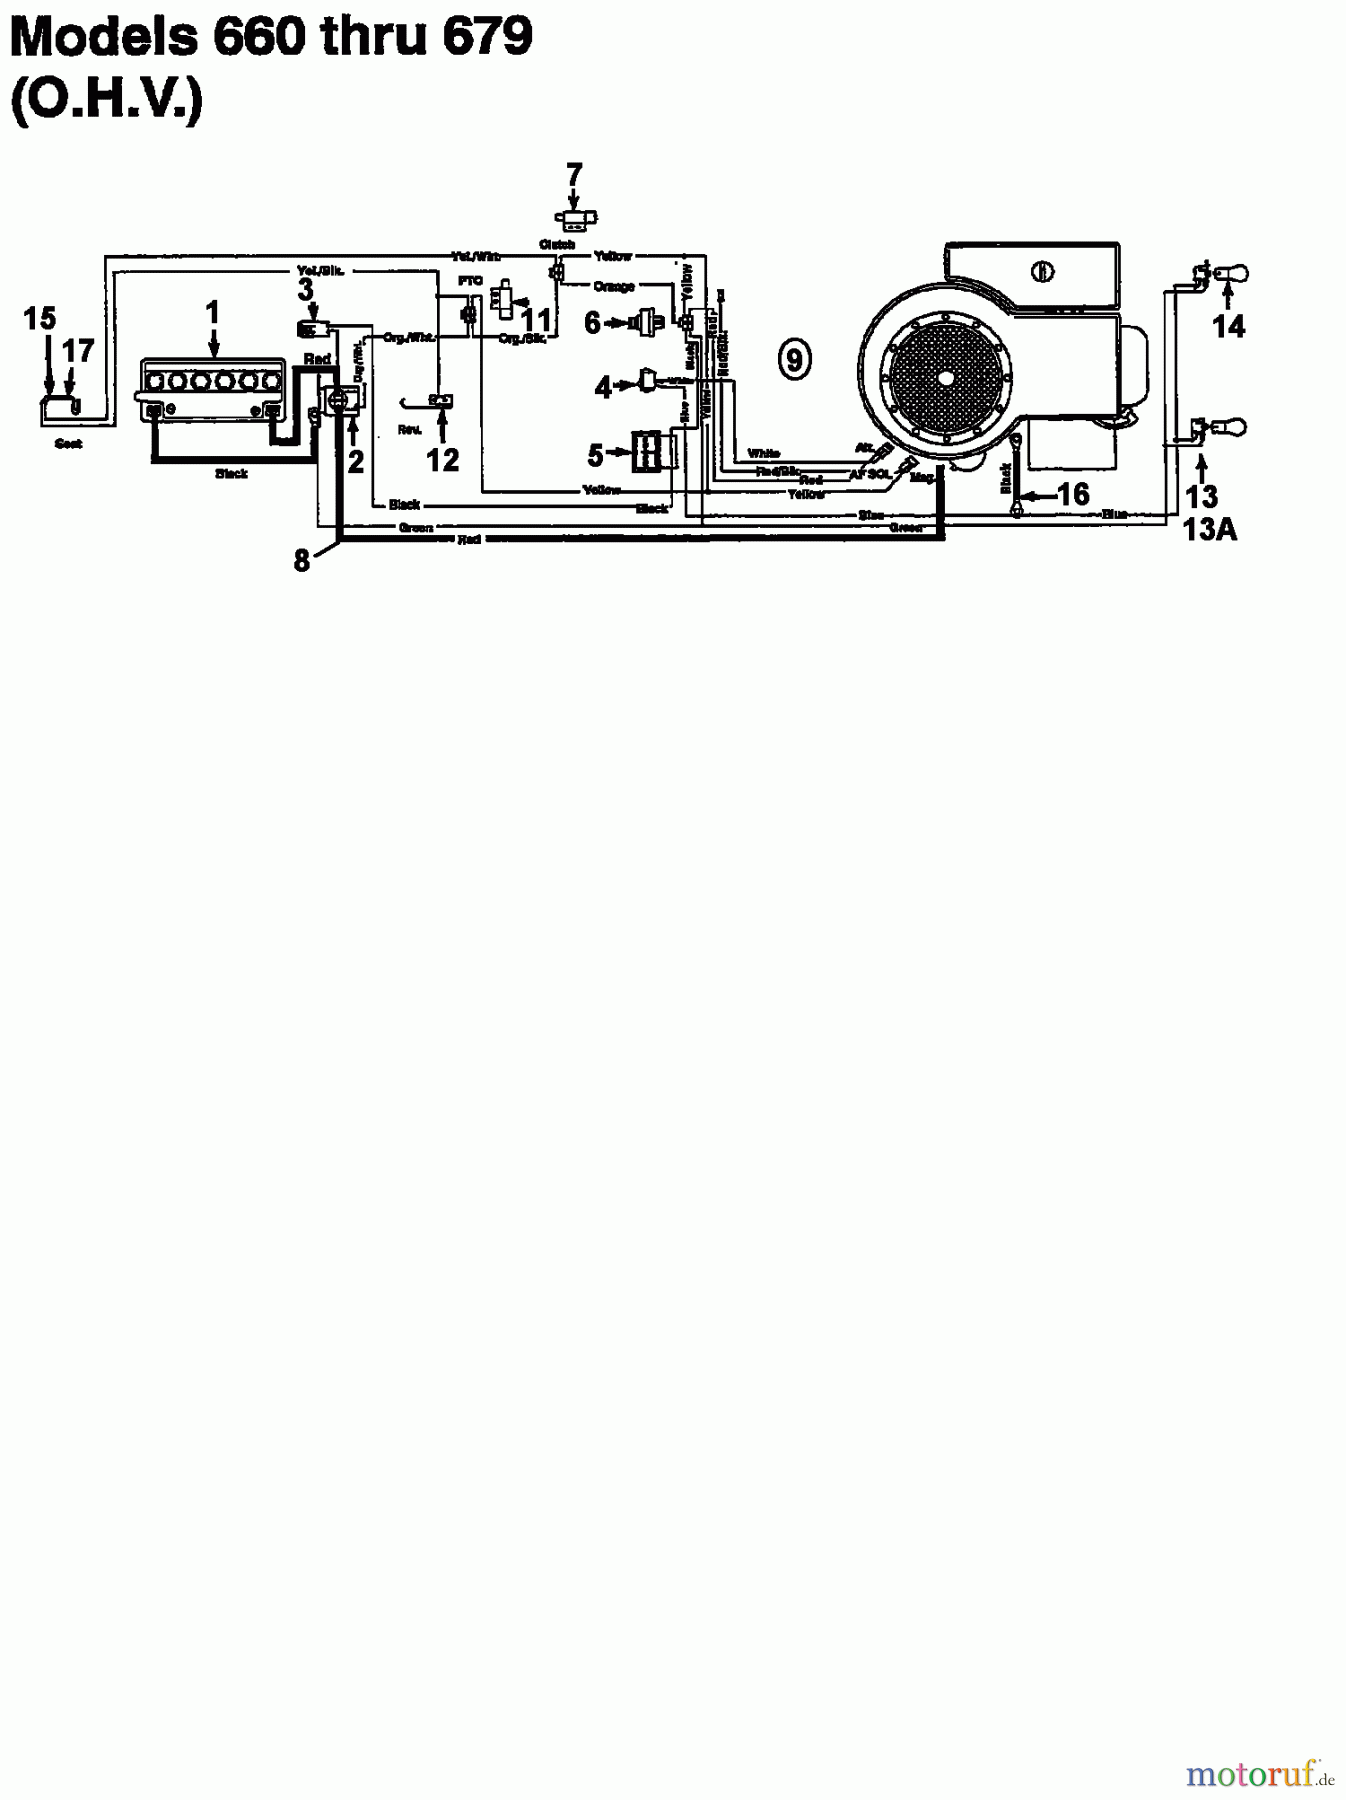  Super Lawn tractors Super 14-107 V 133S619G600  (1993) Wiring diagram for O.H.V.